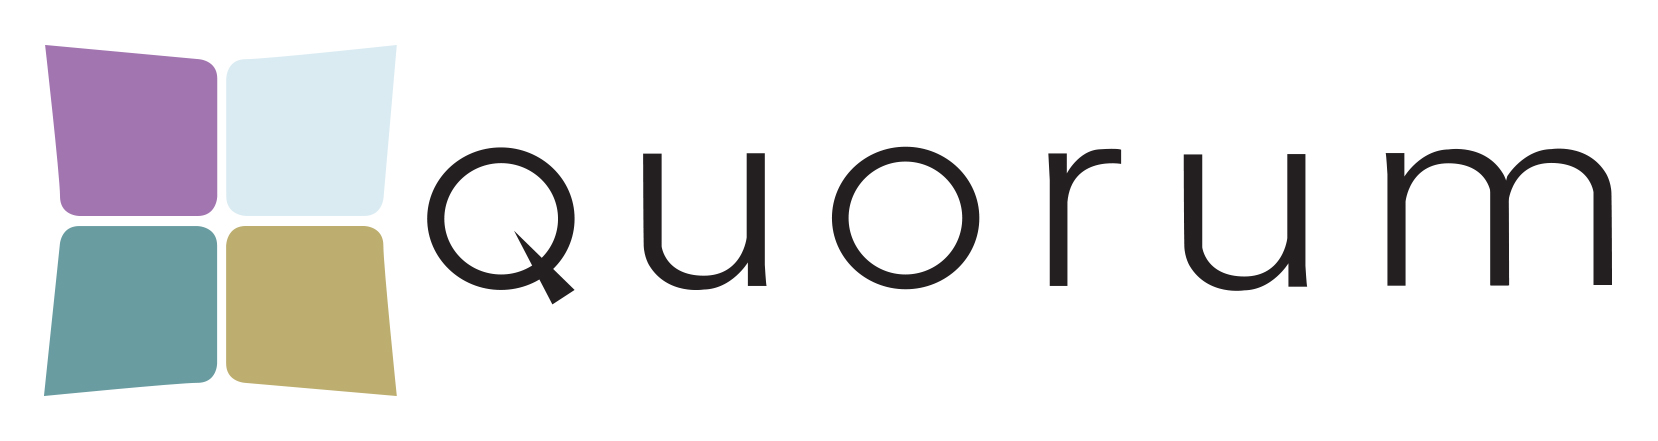 quorum-logo